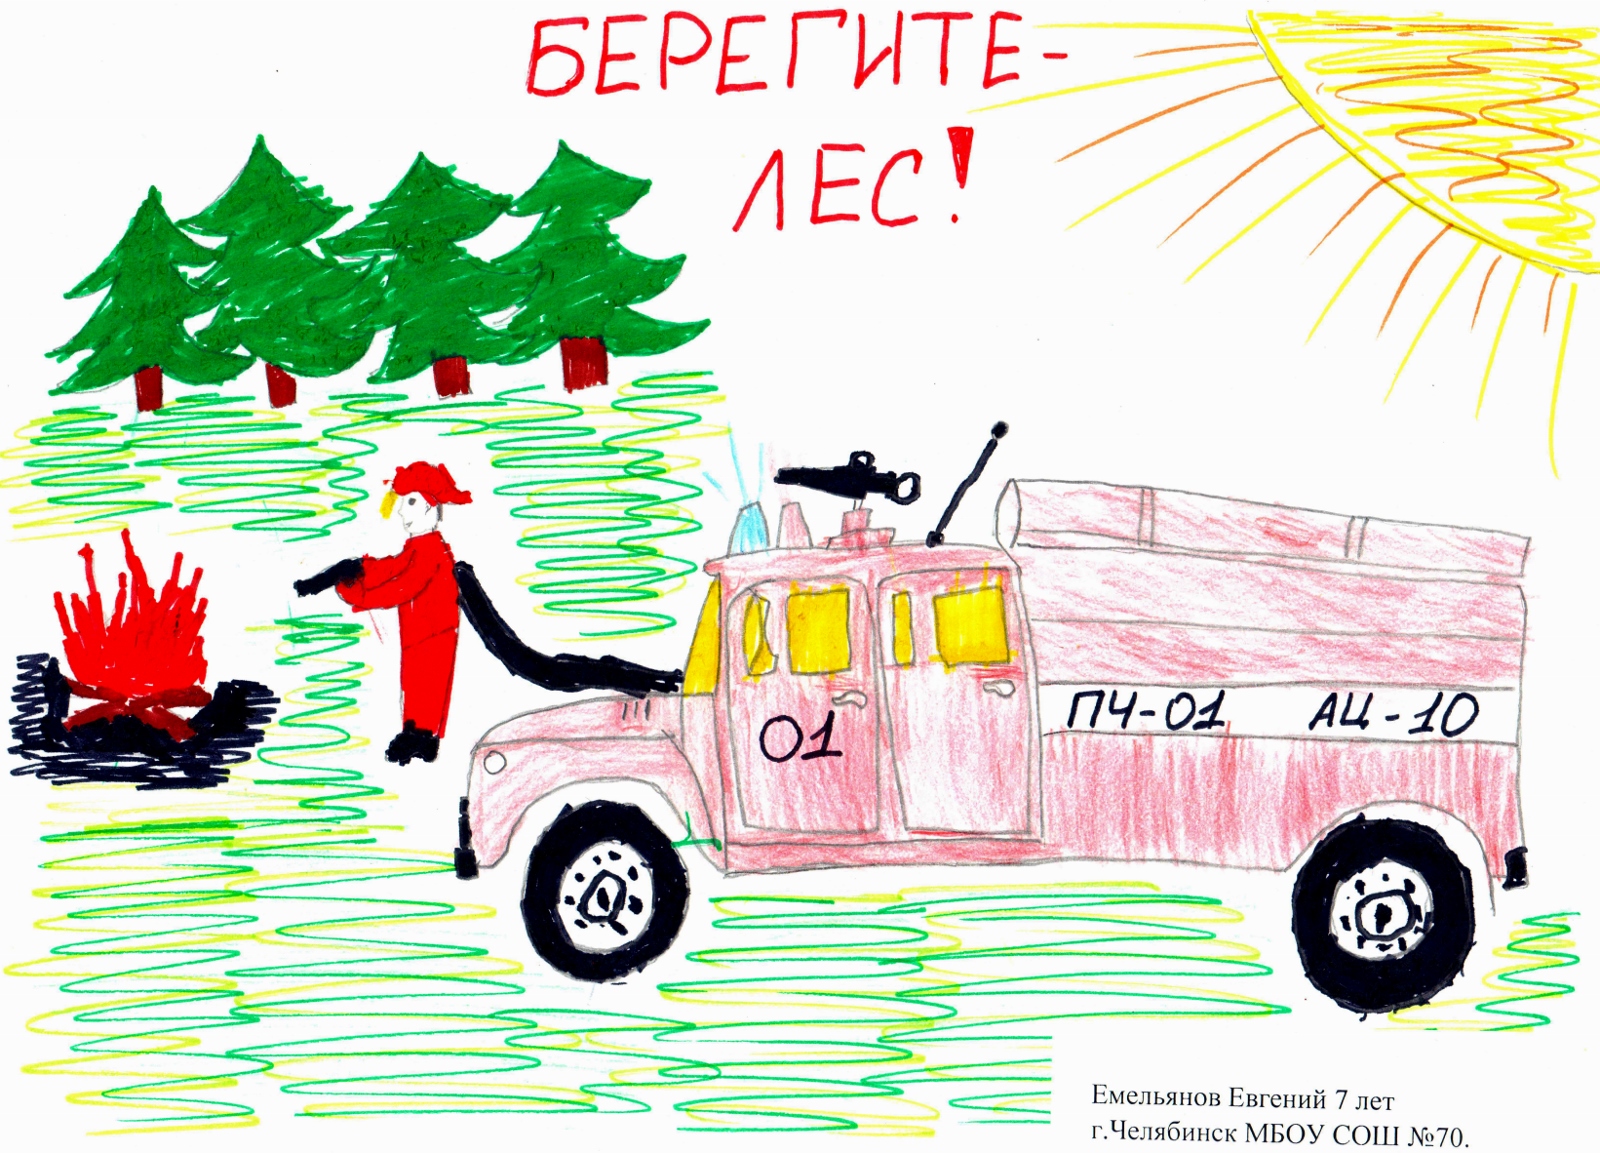 Емельянов Евгений, 7 лет, школа 70 г. Челябинска. Берегите лес!